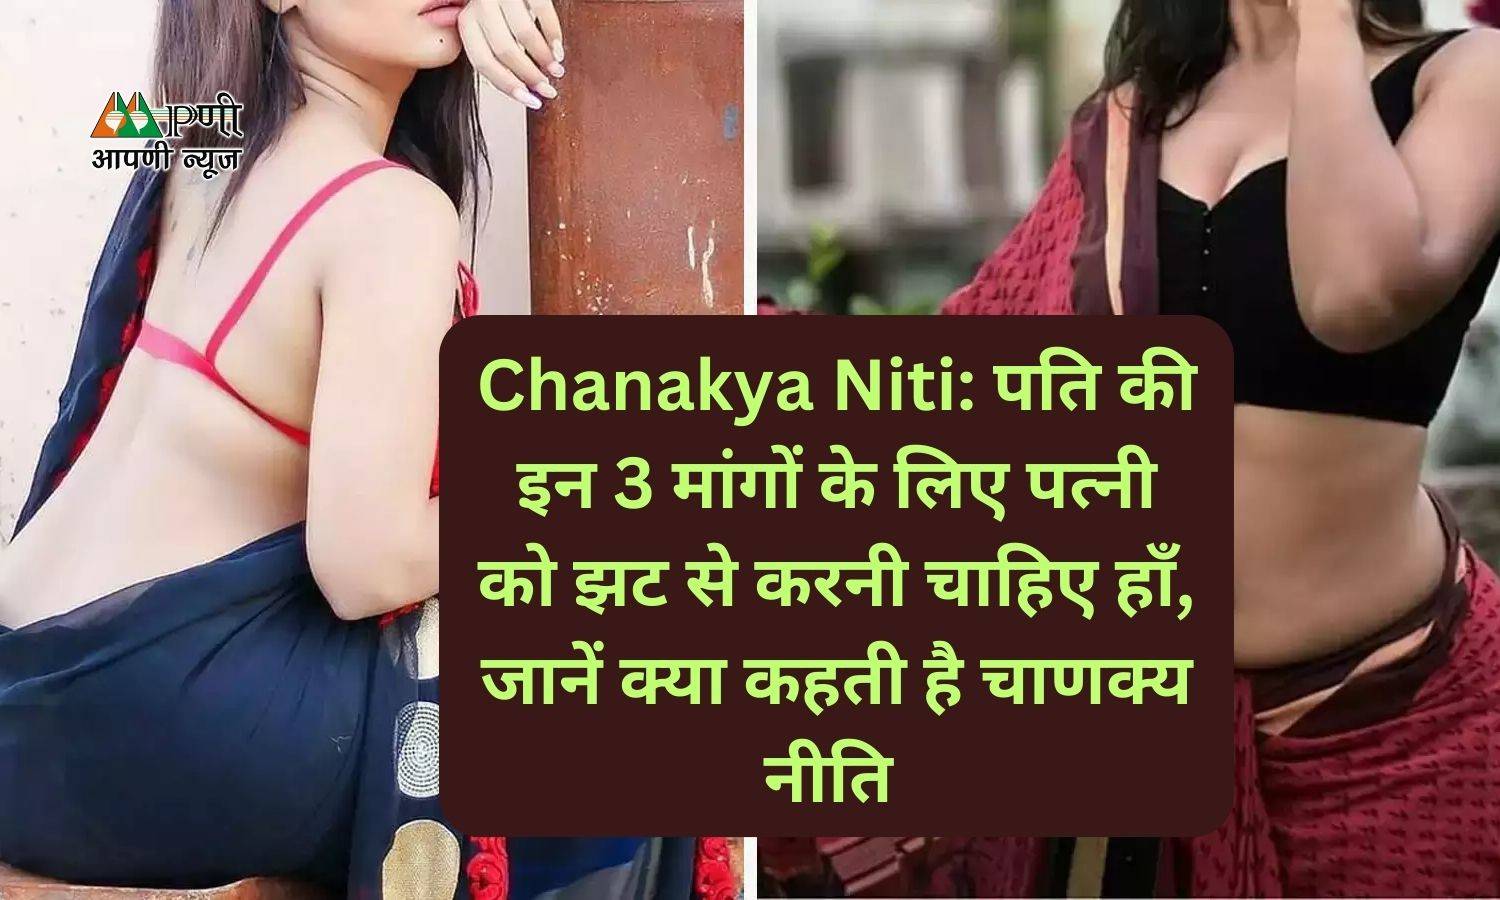 Chanakya Niti: पति की इन 3 मांगों के लिए पत्नी को झट से करनी चाहिए हाँ, जानें क्या कहती है चाणक्य नीति